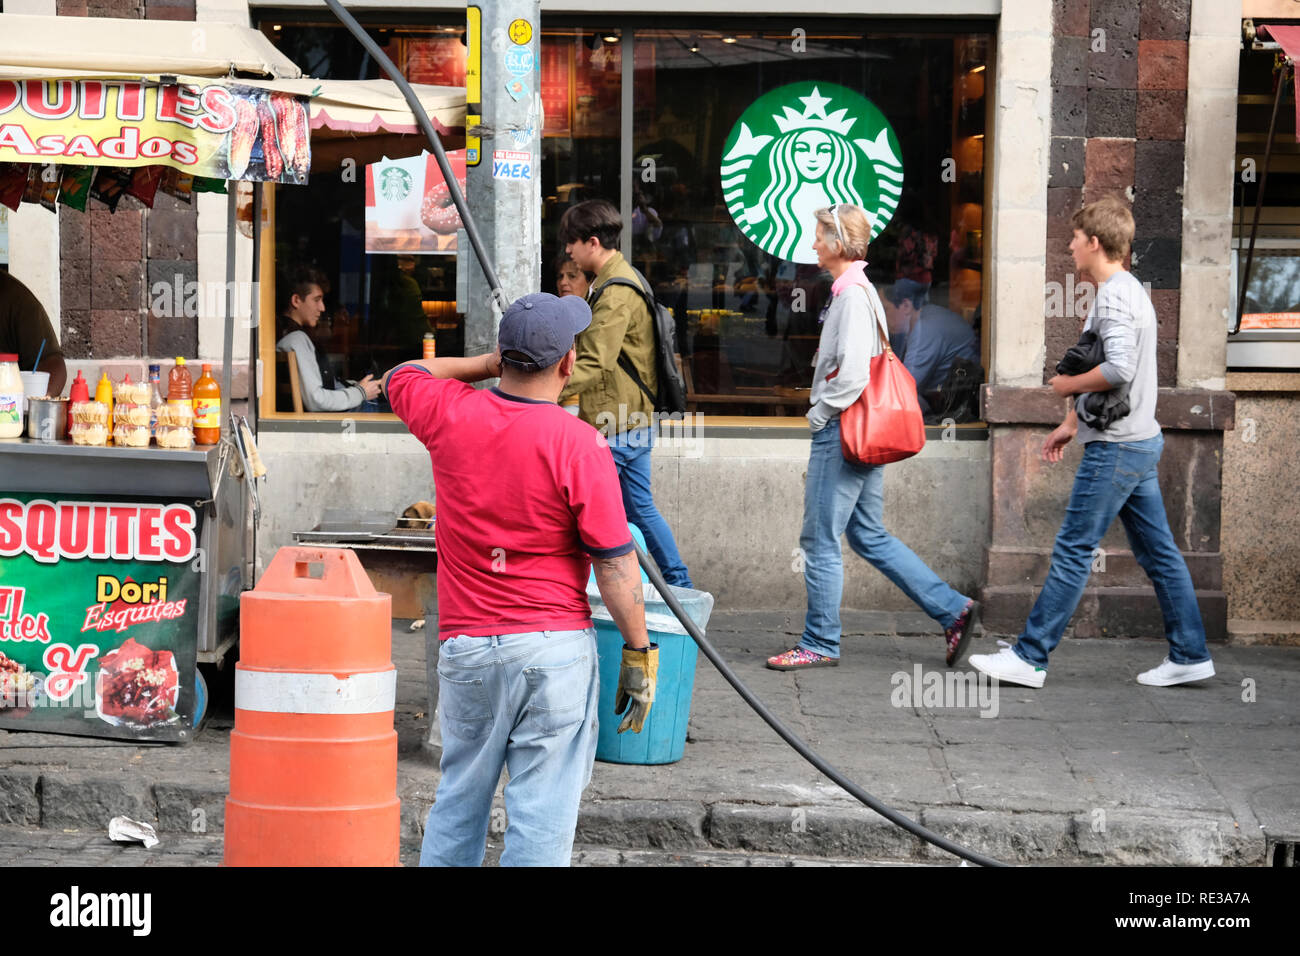 Un homme mexicain travaillant en face d'un café Starbucks store à Cholula, Puebla Mexique Banque D'Images